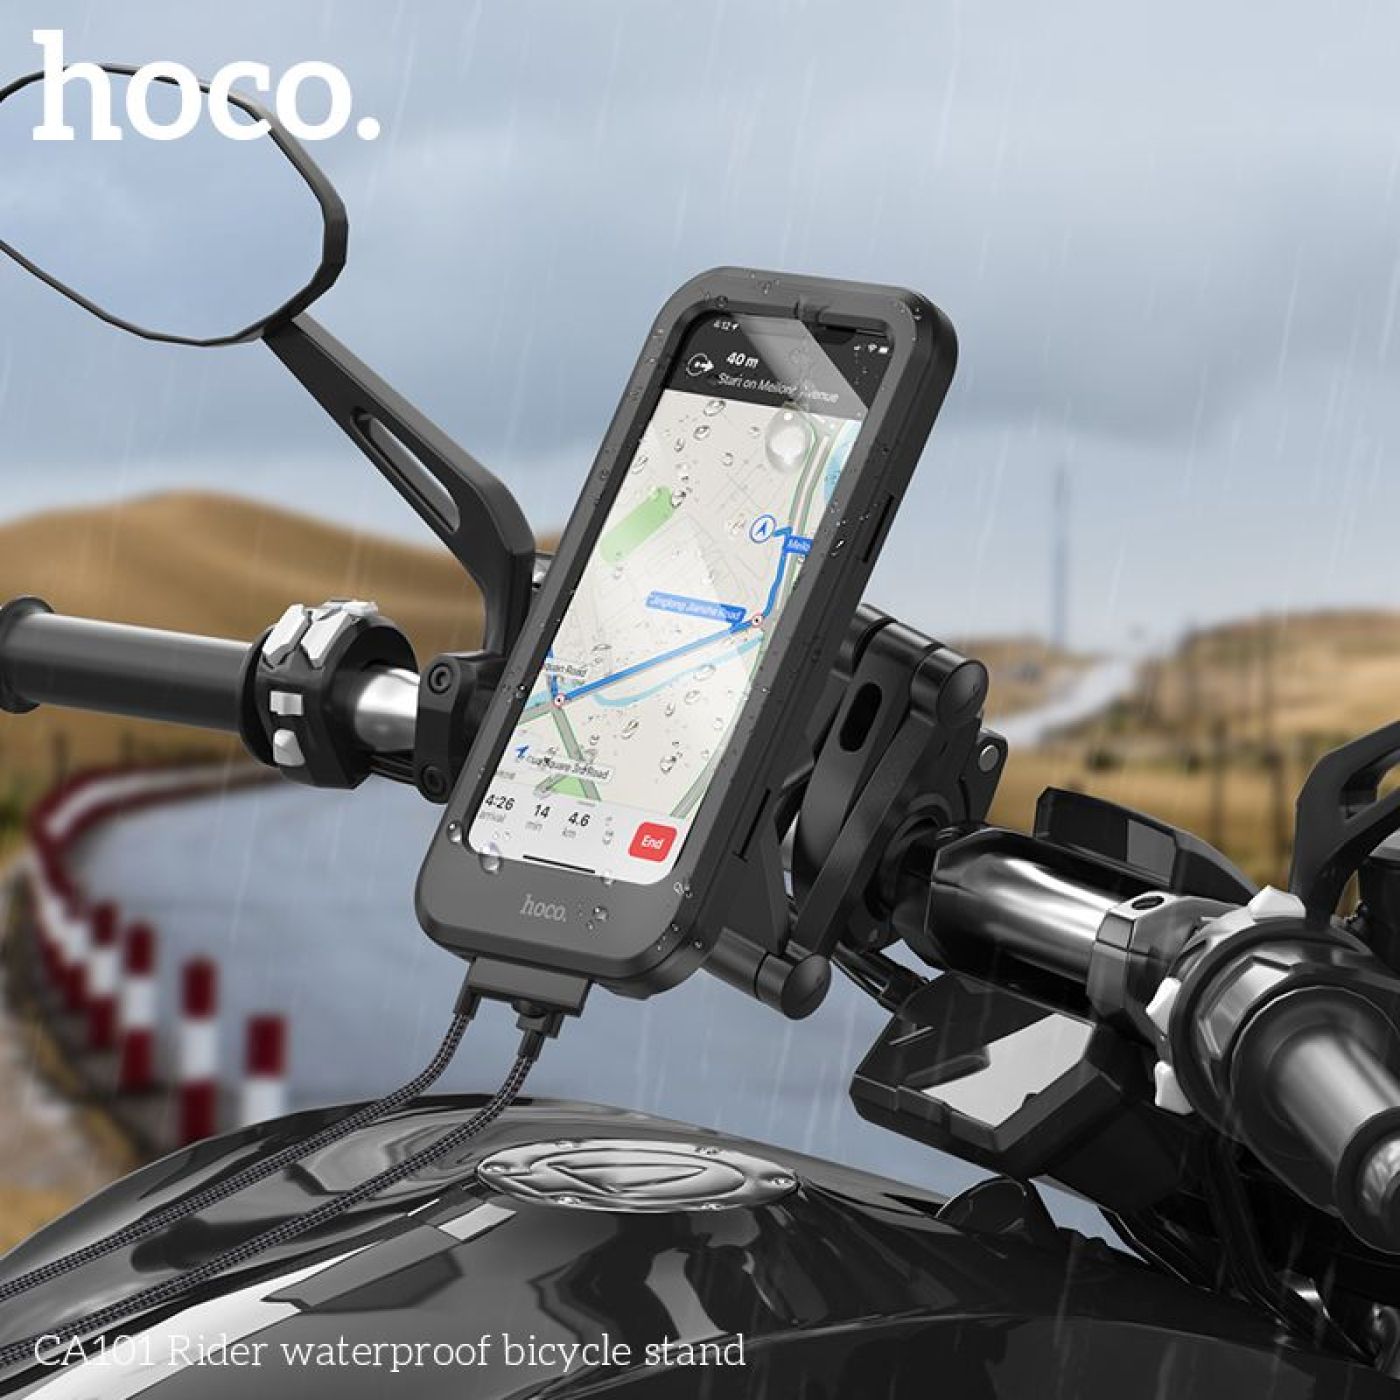 Giá đỡ điện thoại xe máy xe đạp, chống nước cảm ứng Hoco CA101